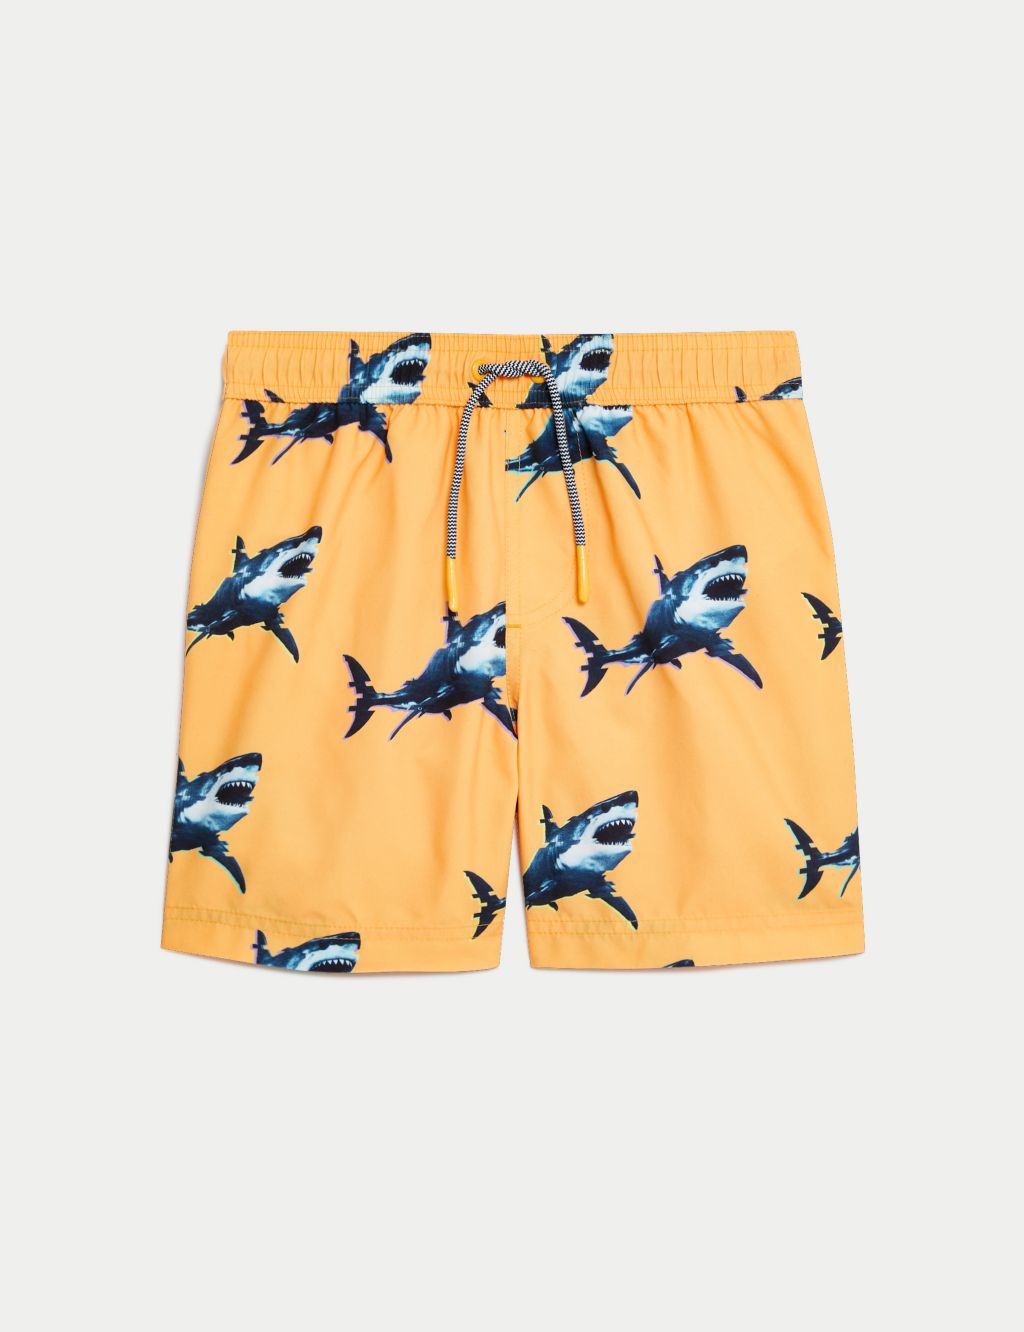 Shark Print Swim Shorts (6-16 Yrs) image 2